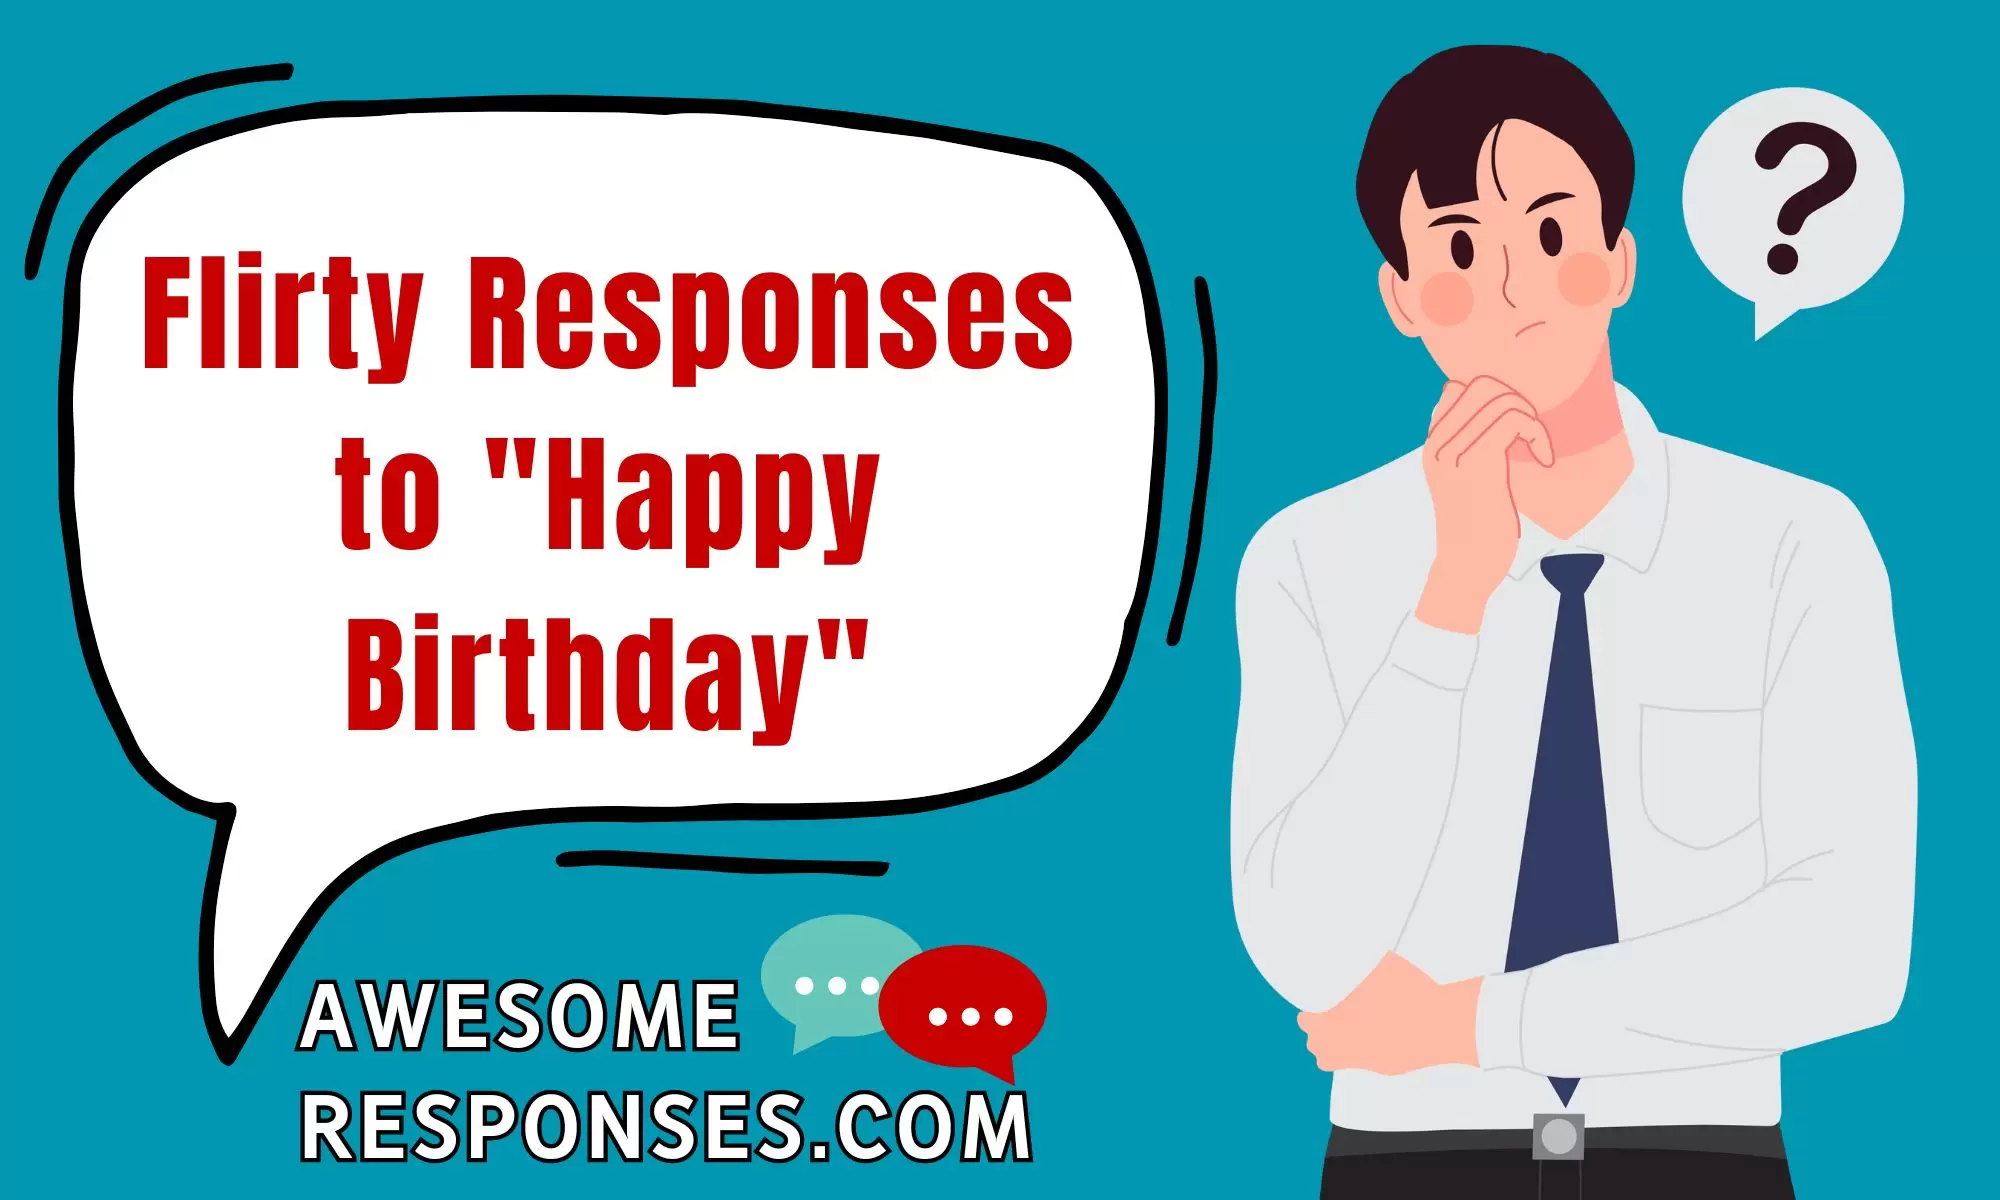 Flirty Responses to "Happy Birthday"